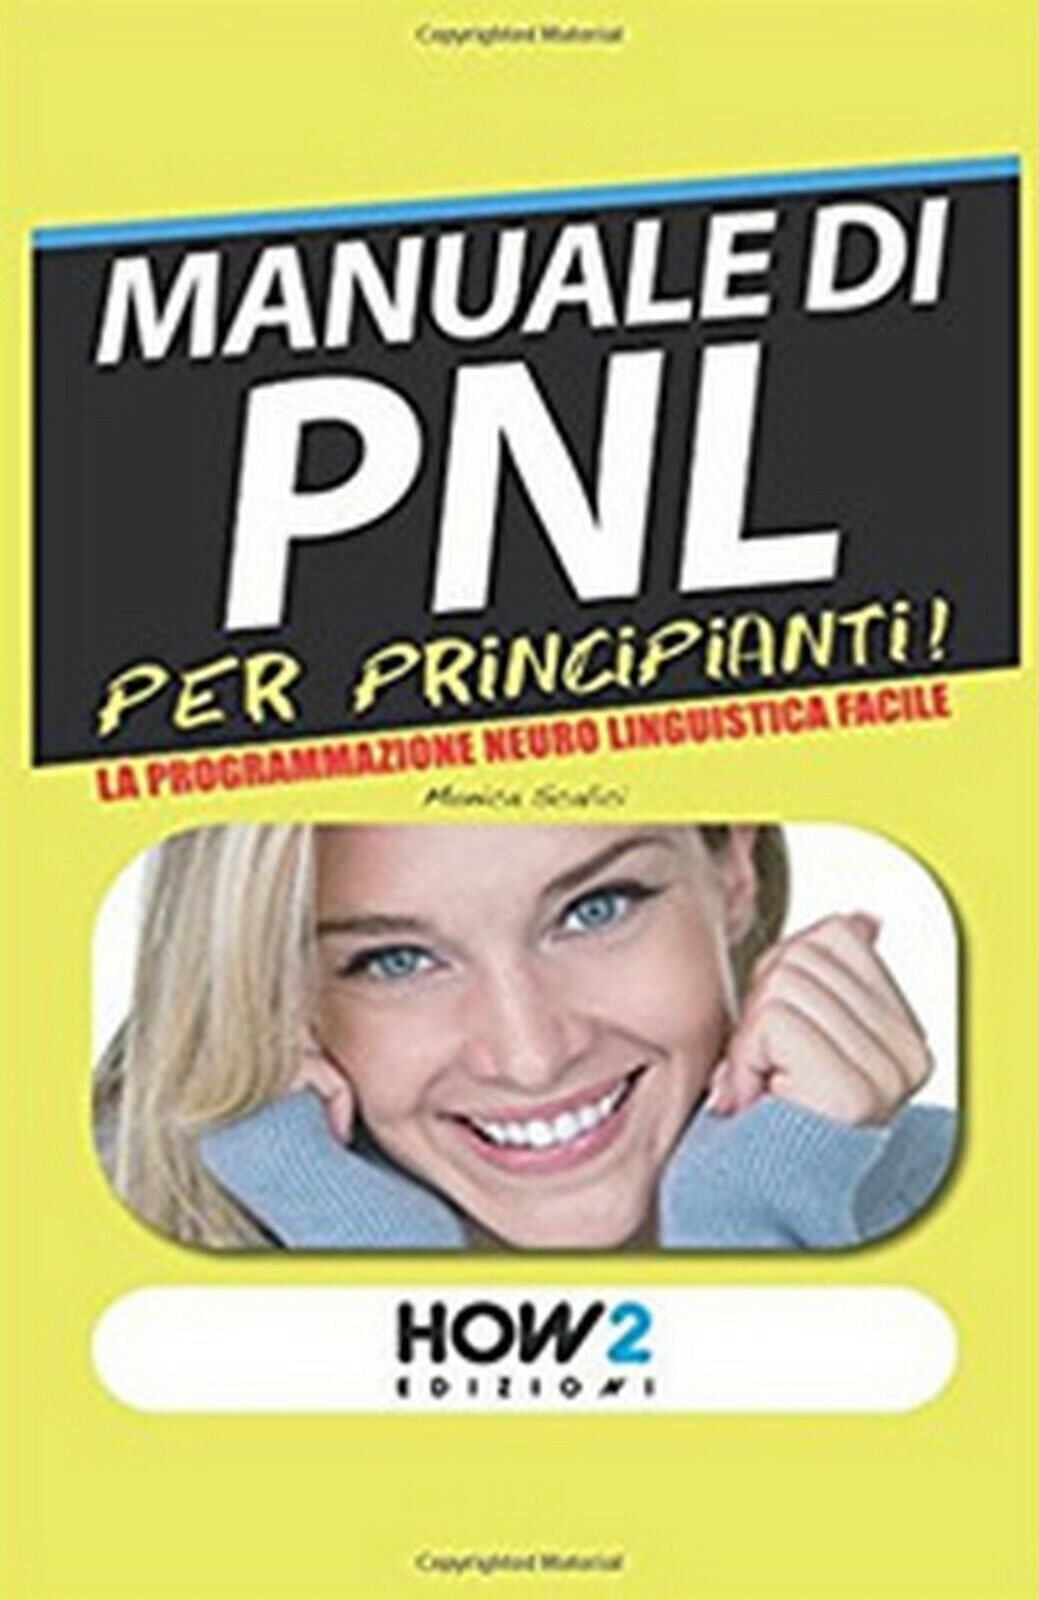 Manuale di PNL per principianti! La programmazione neuro linguistica facile libro usato